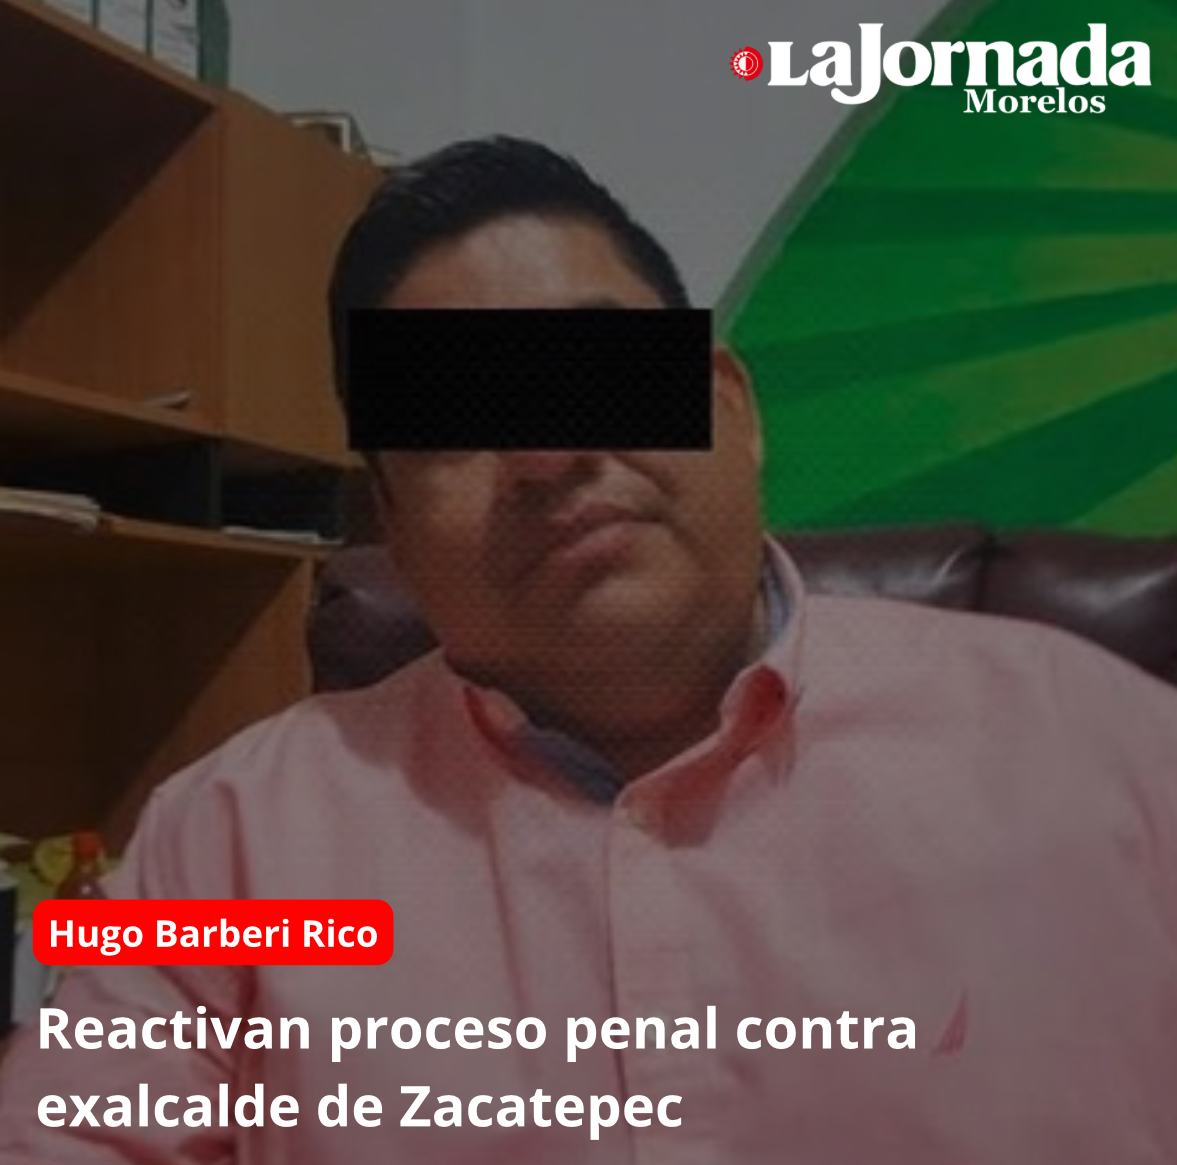 Reactivan proceso penal contra exalcalde de Zacatepec